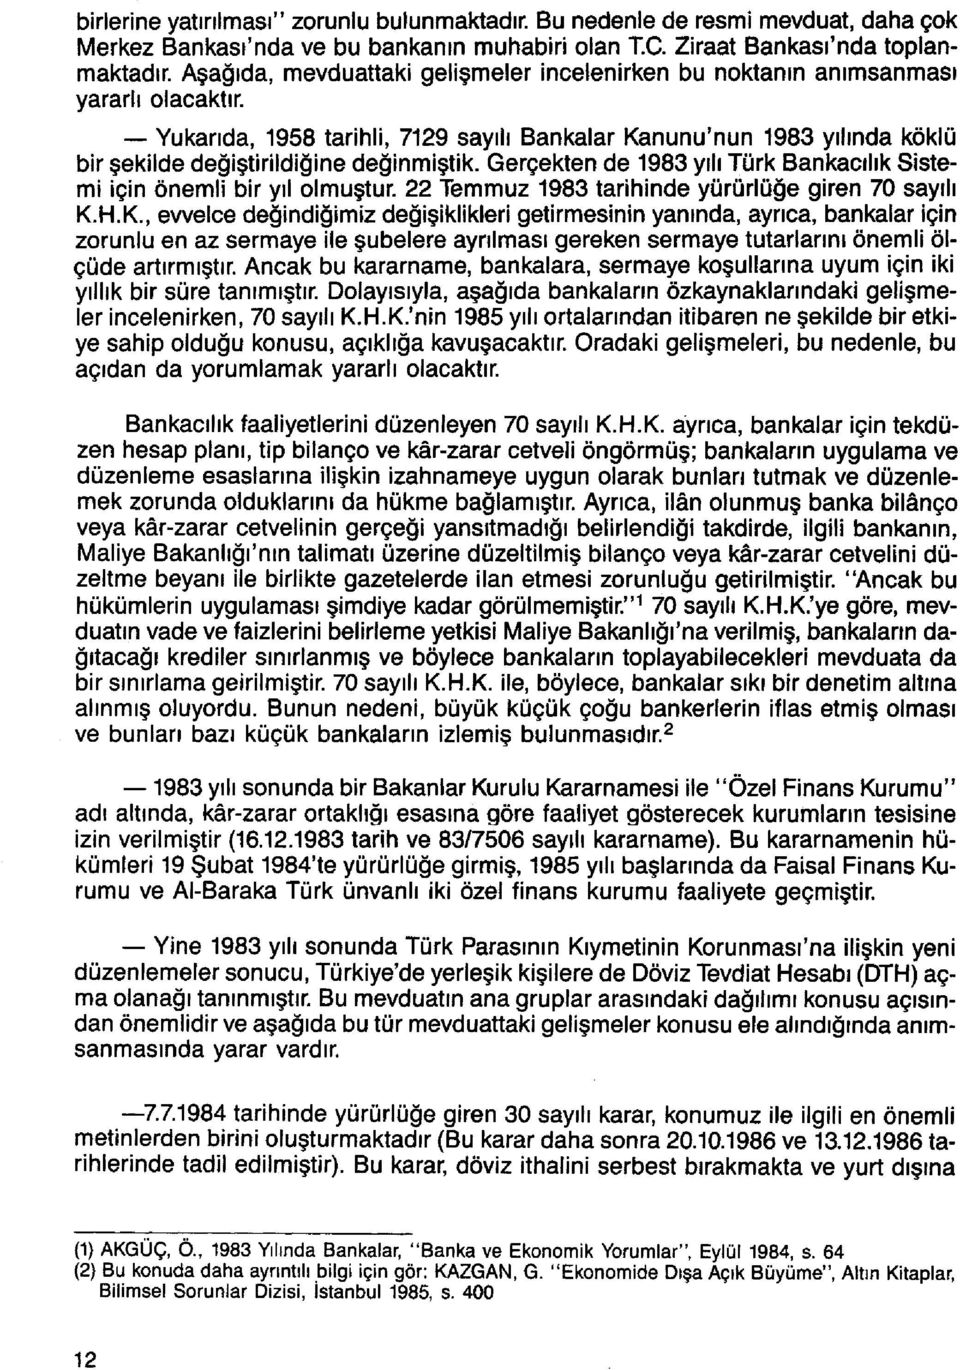 Yukarıda, 1958 tarihli, 7129 sayılı Bankalar Kanunu'nun 1983 yılında köklü bir şekilde değiştirildiğine değinmiştik. Gerçekten de 1983 yılı Türk Bankacılık Sistemi için önemli bir yıl olmuştur.